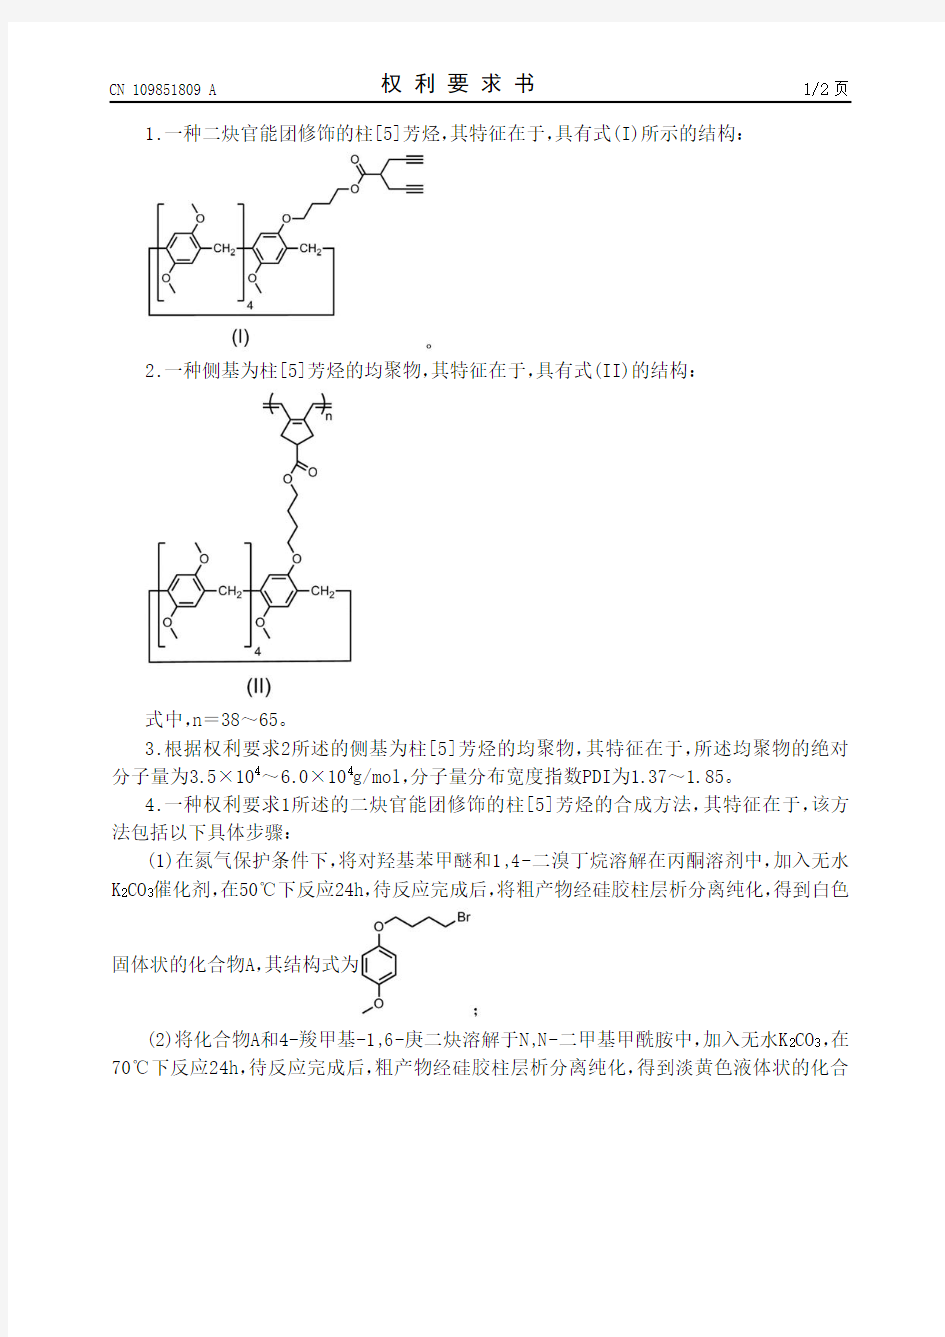 【CN109851809A】一种柱5芳烃单体及其均聚物及制备方法【专利】